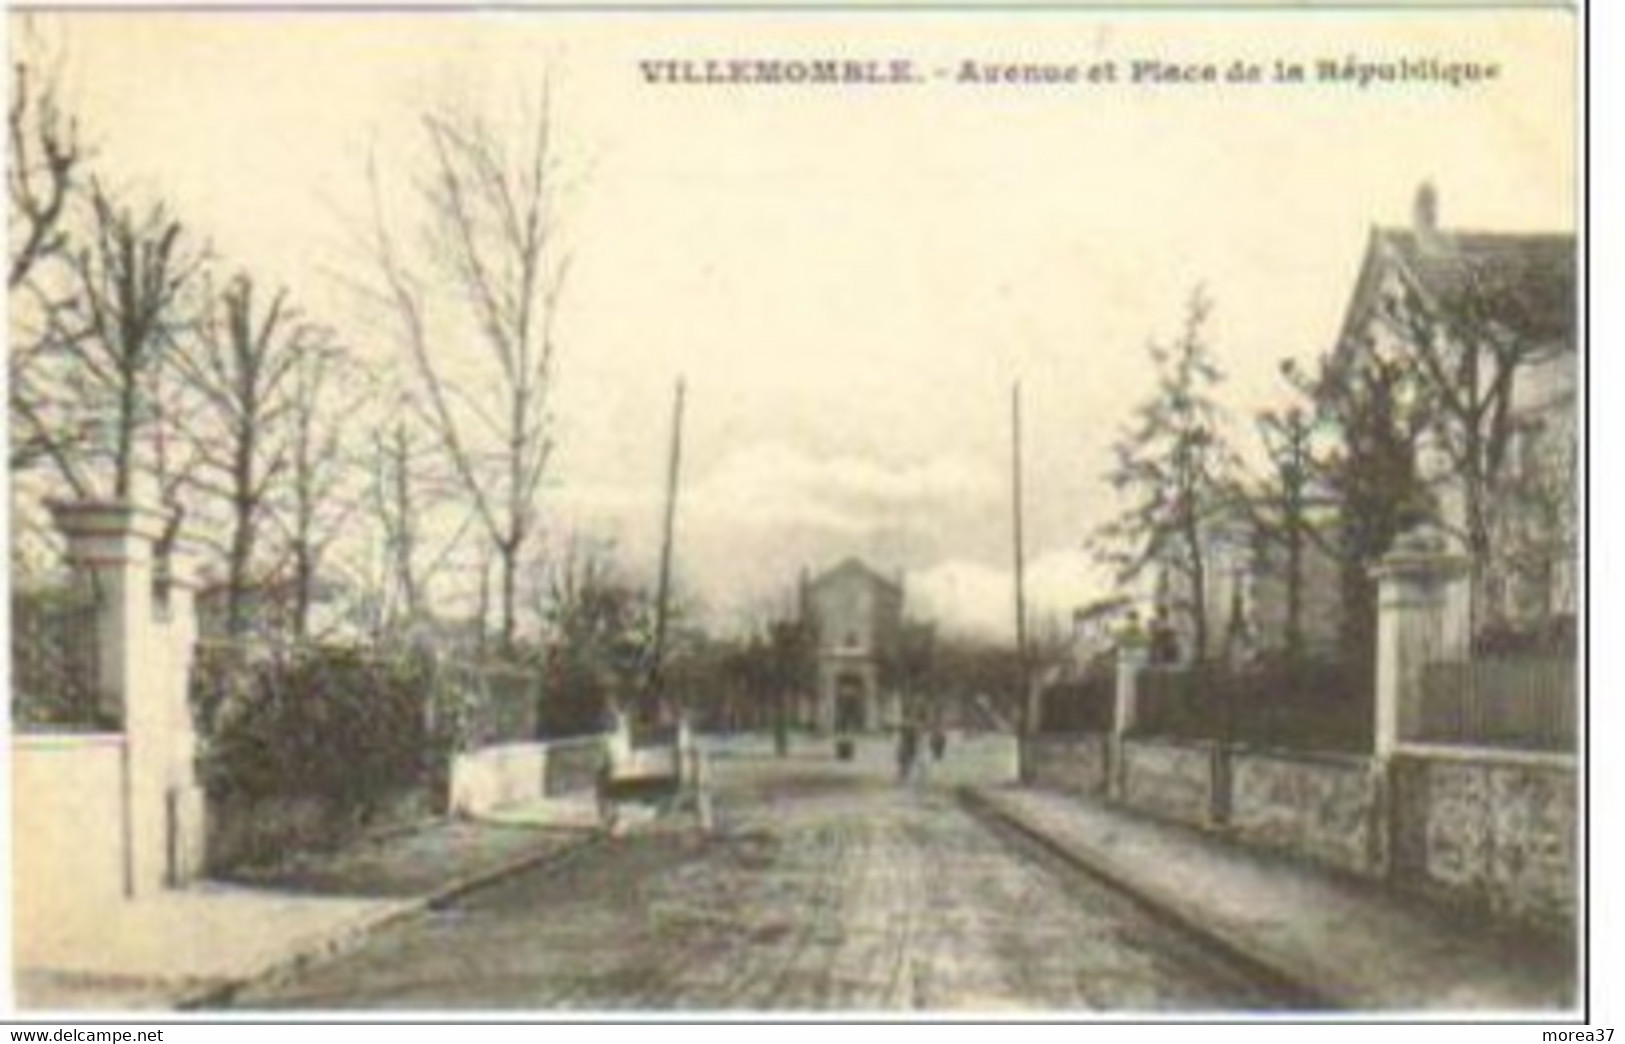 VILLEMOMBLE  Avenue Et Place De Le République - Villemomble